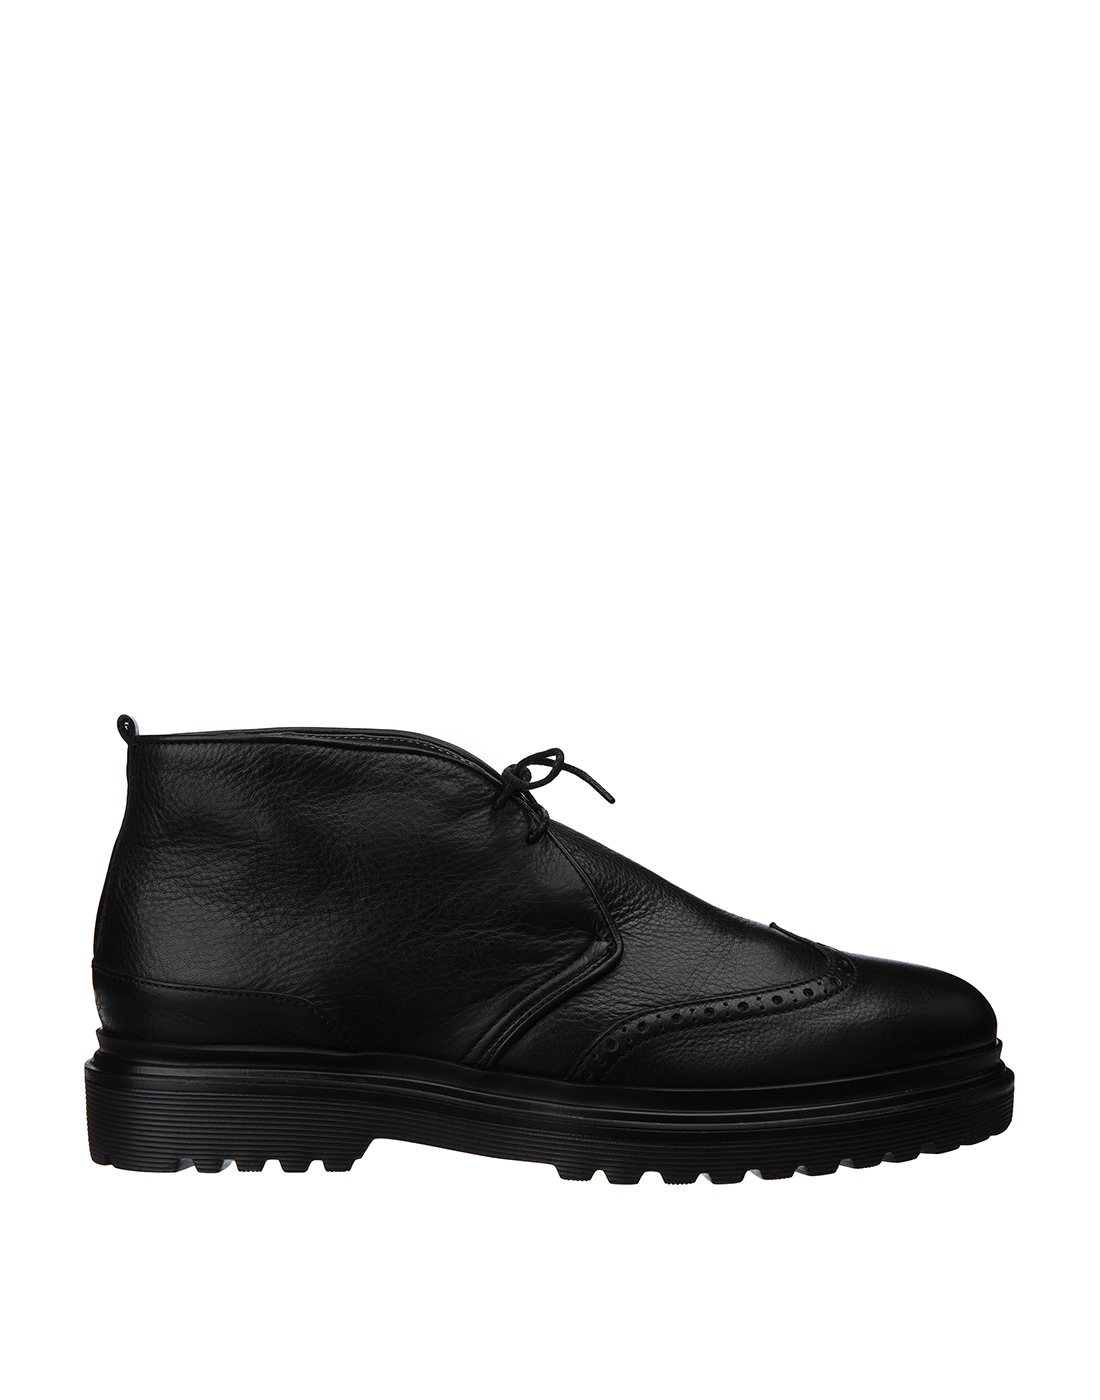 Ботинки черные мужские A.Guardiani S77518-1